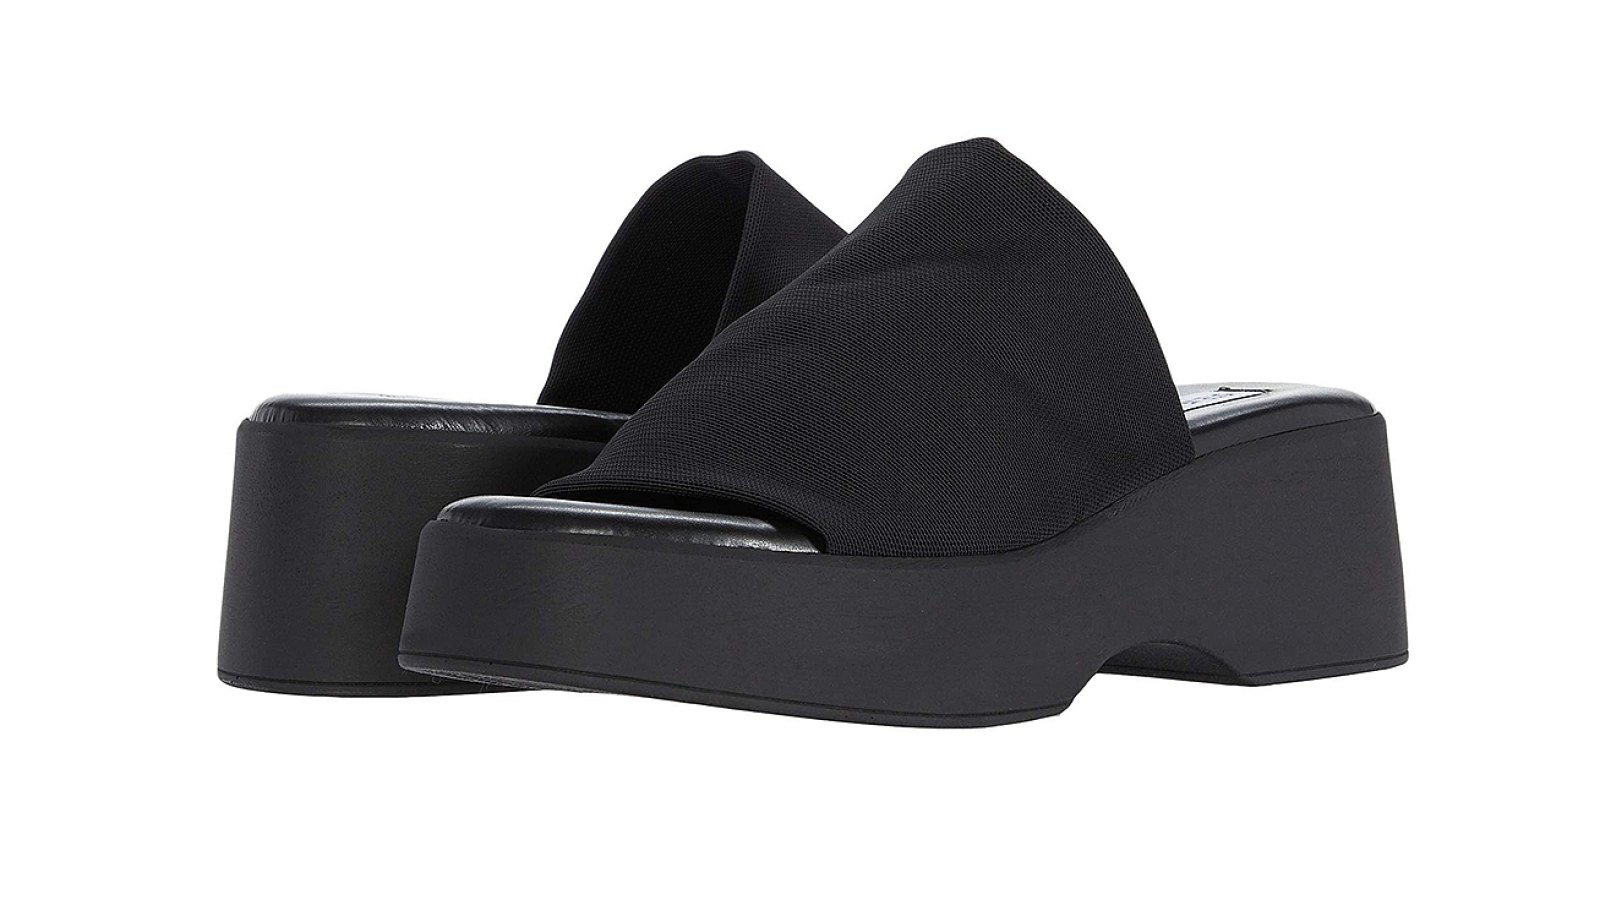 Steve Madden '90s Platform Sandal Is on Major Sale at Zappos